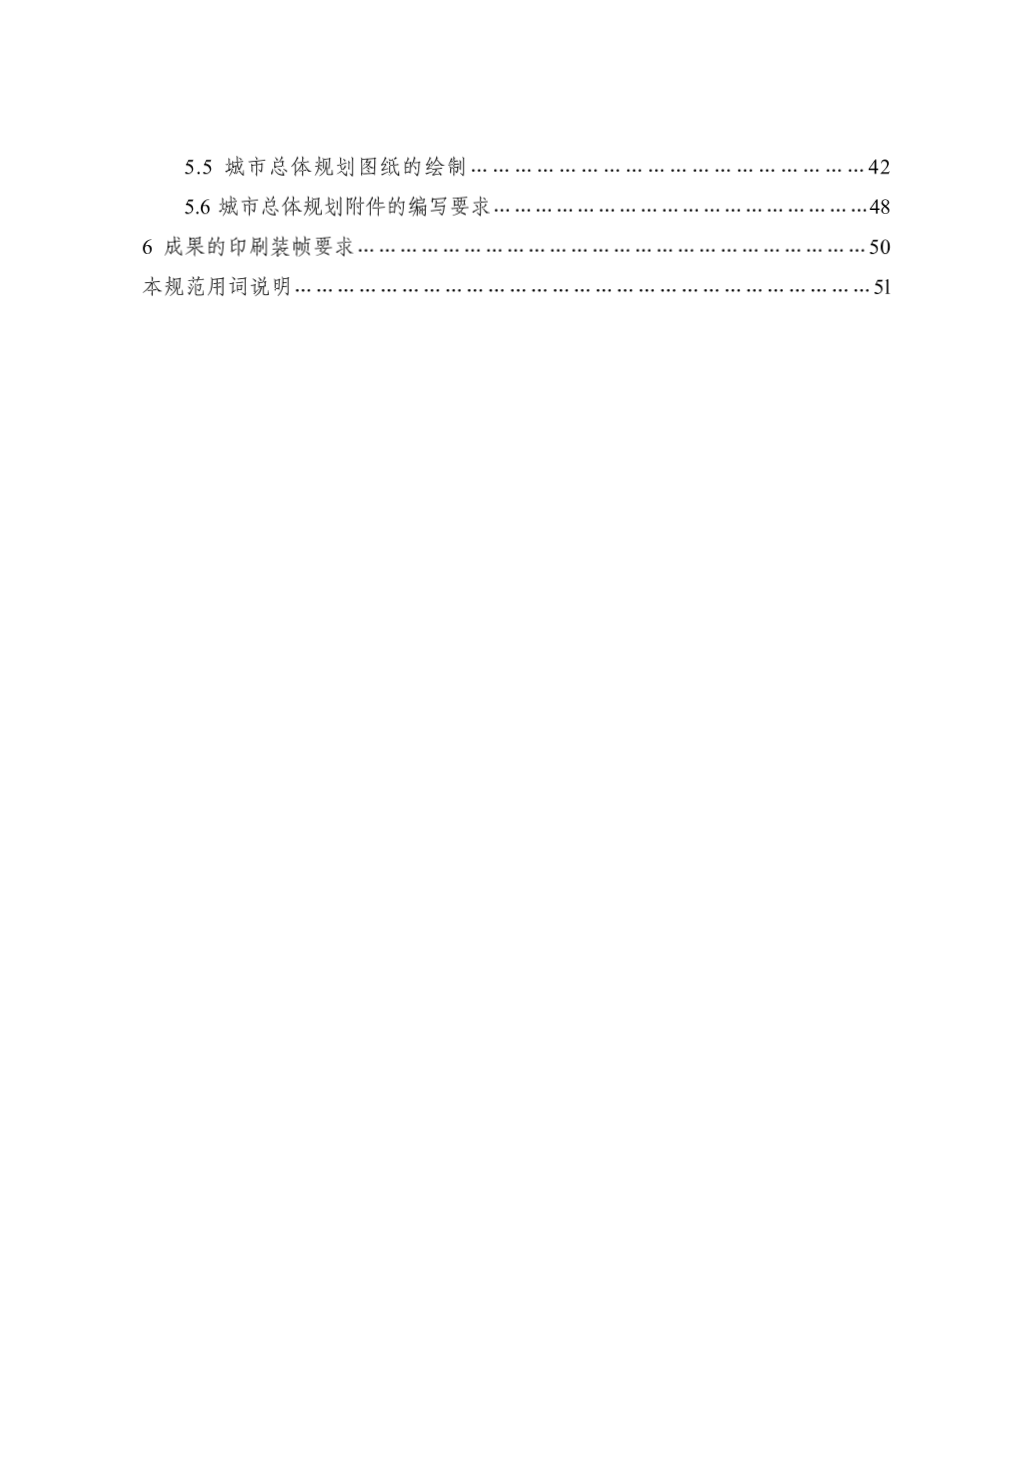 黑龙江省城市总体规划编制规范公告-图二